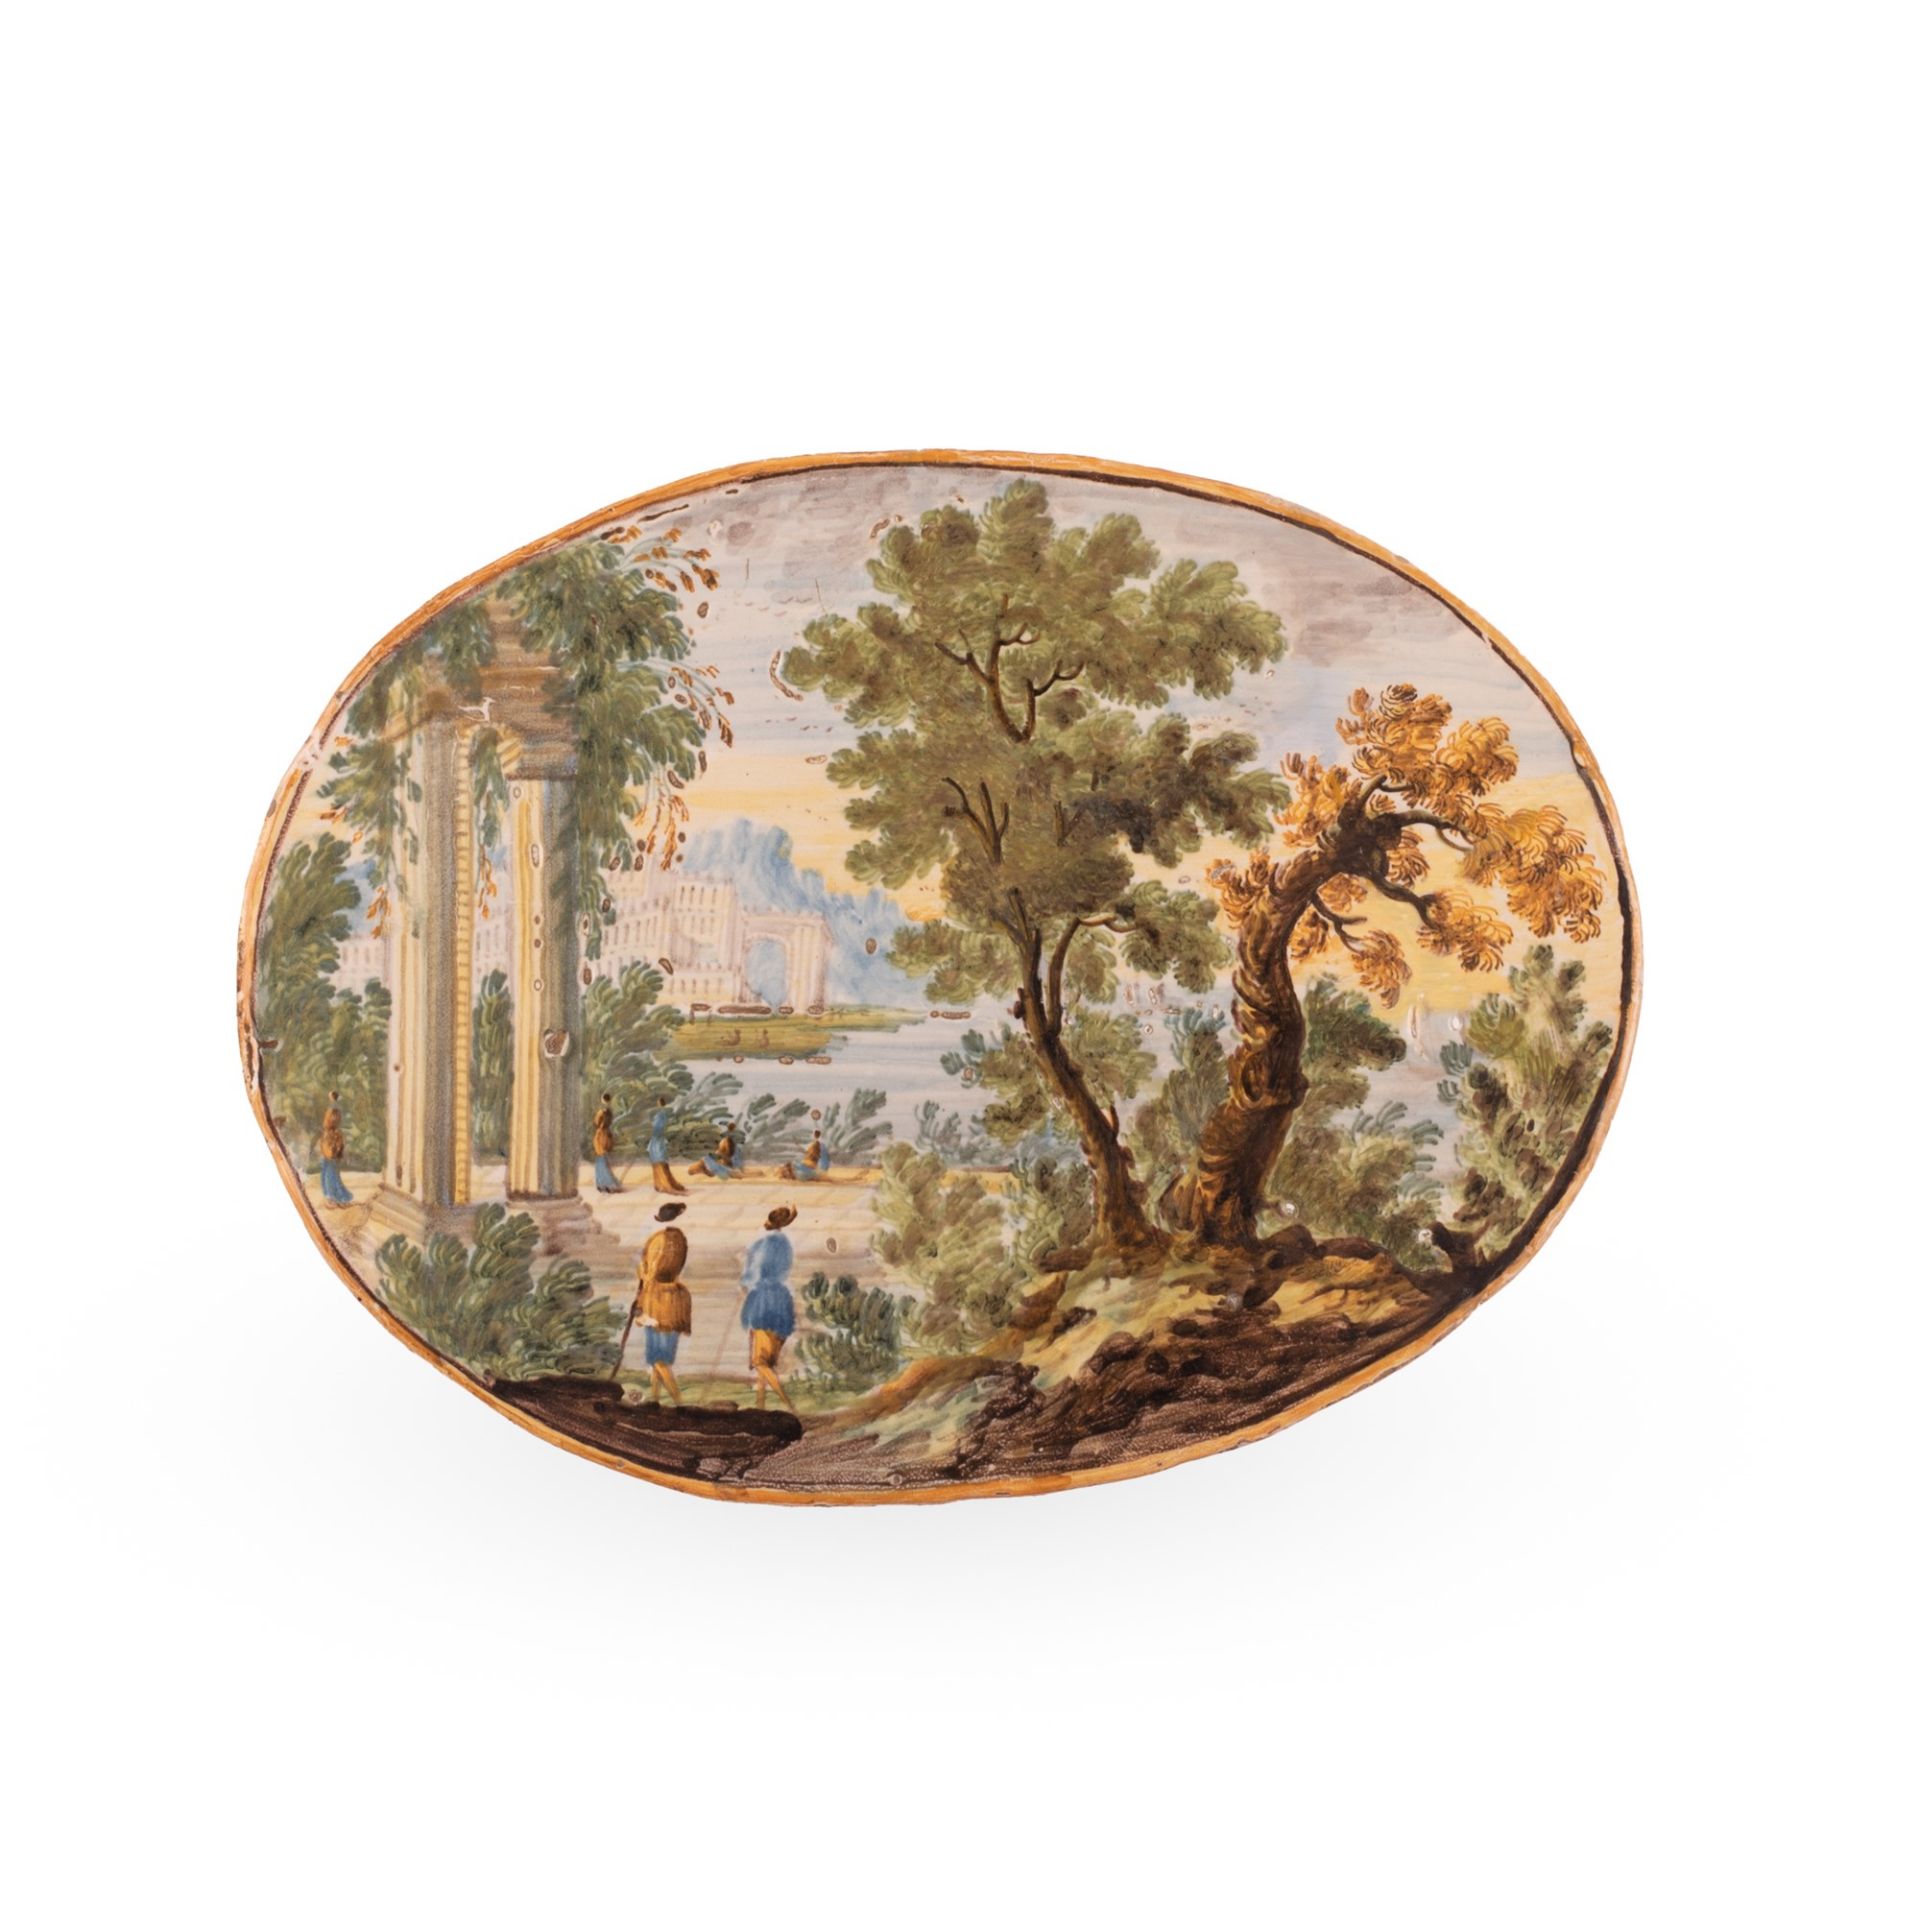 Mattonella ovale in maiolica decorata con un paesaggio